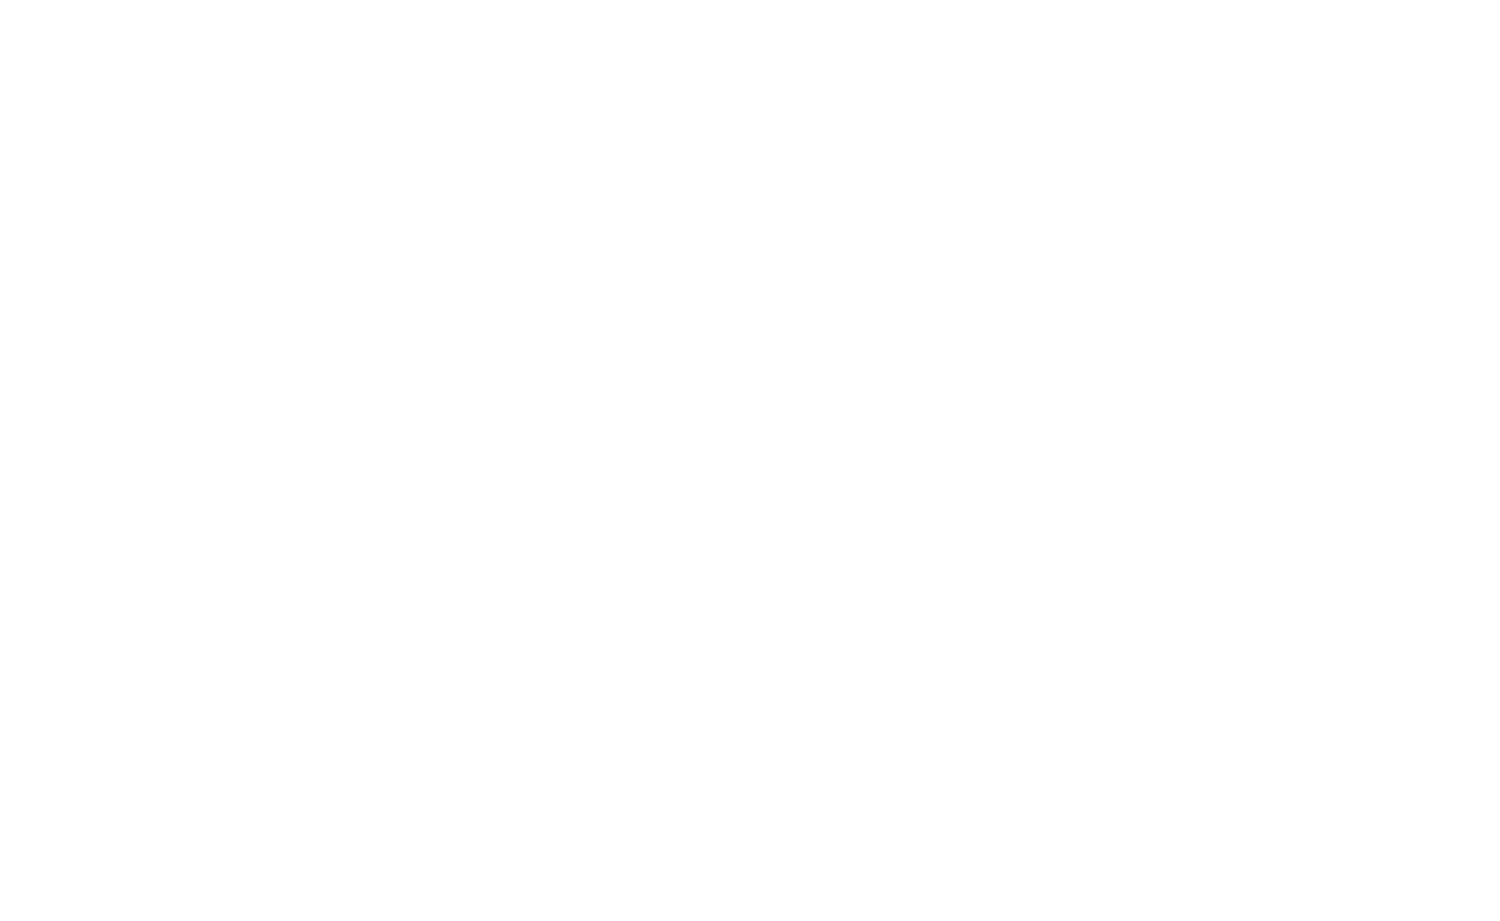 J. Renee Services